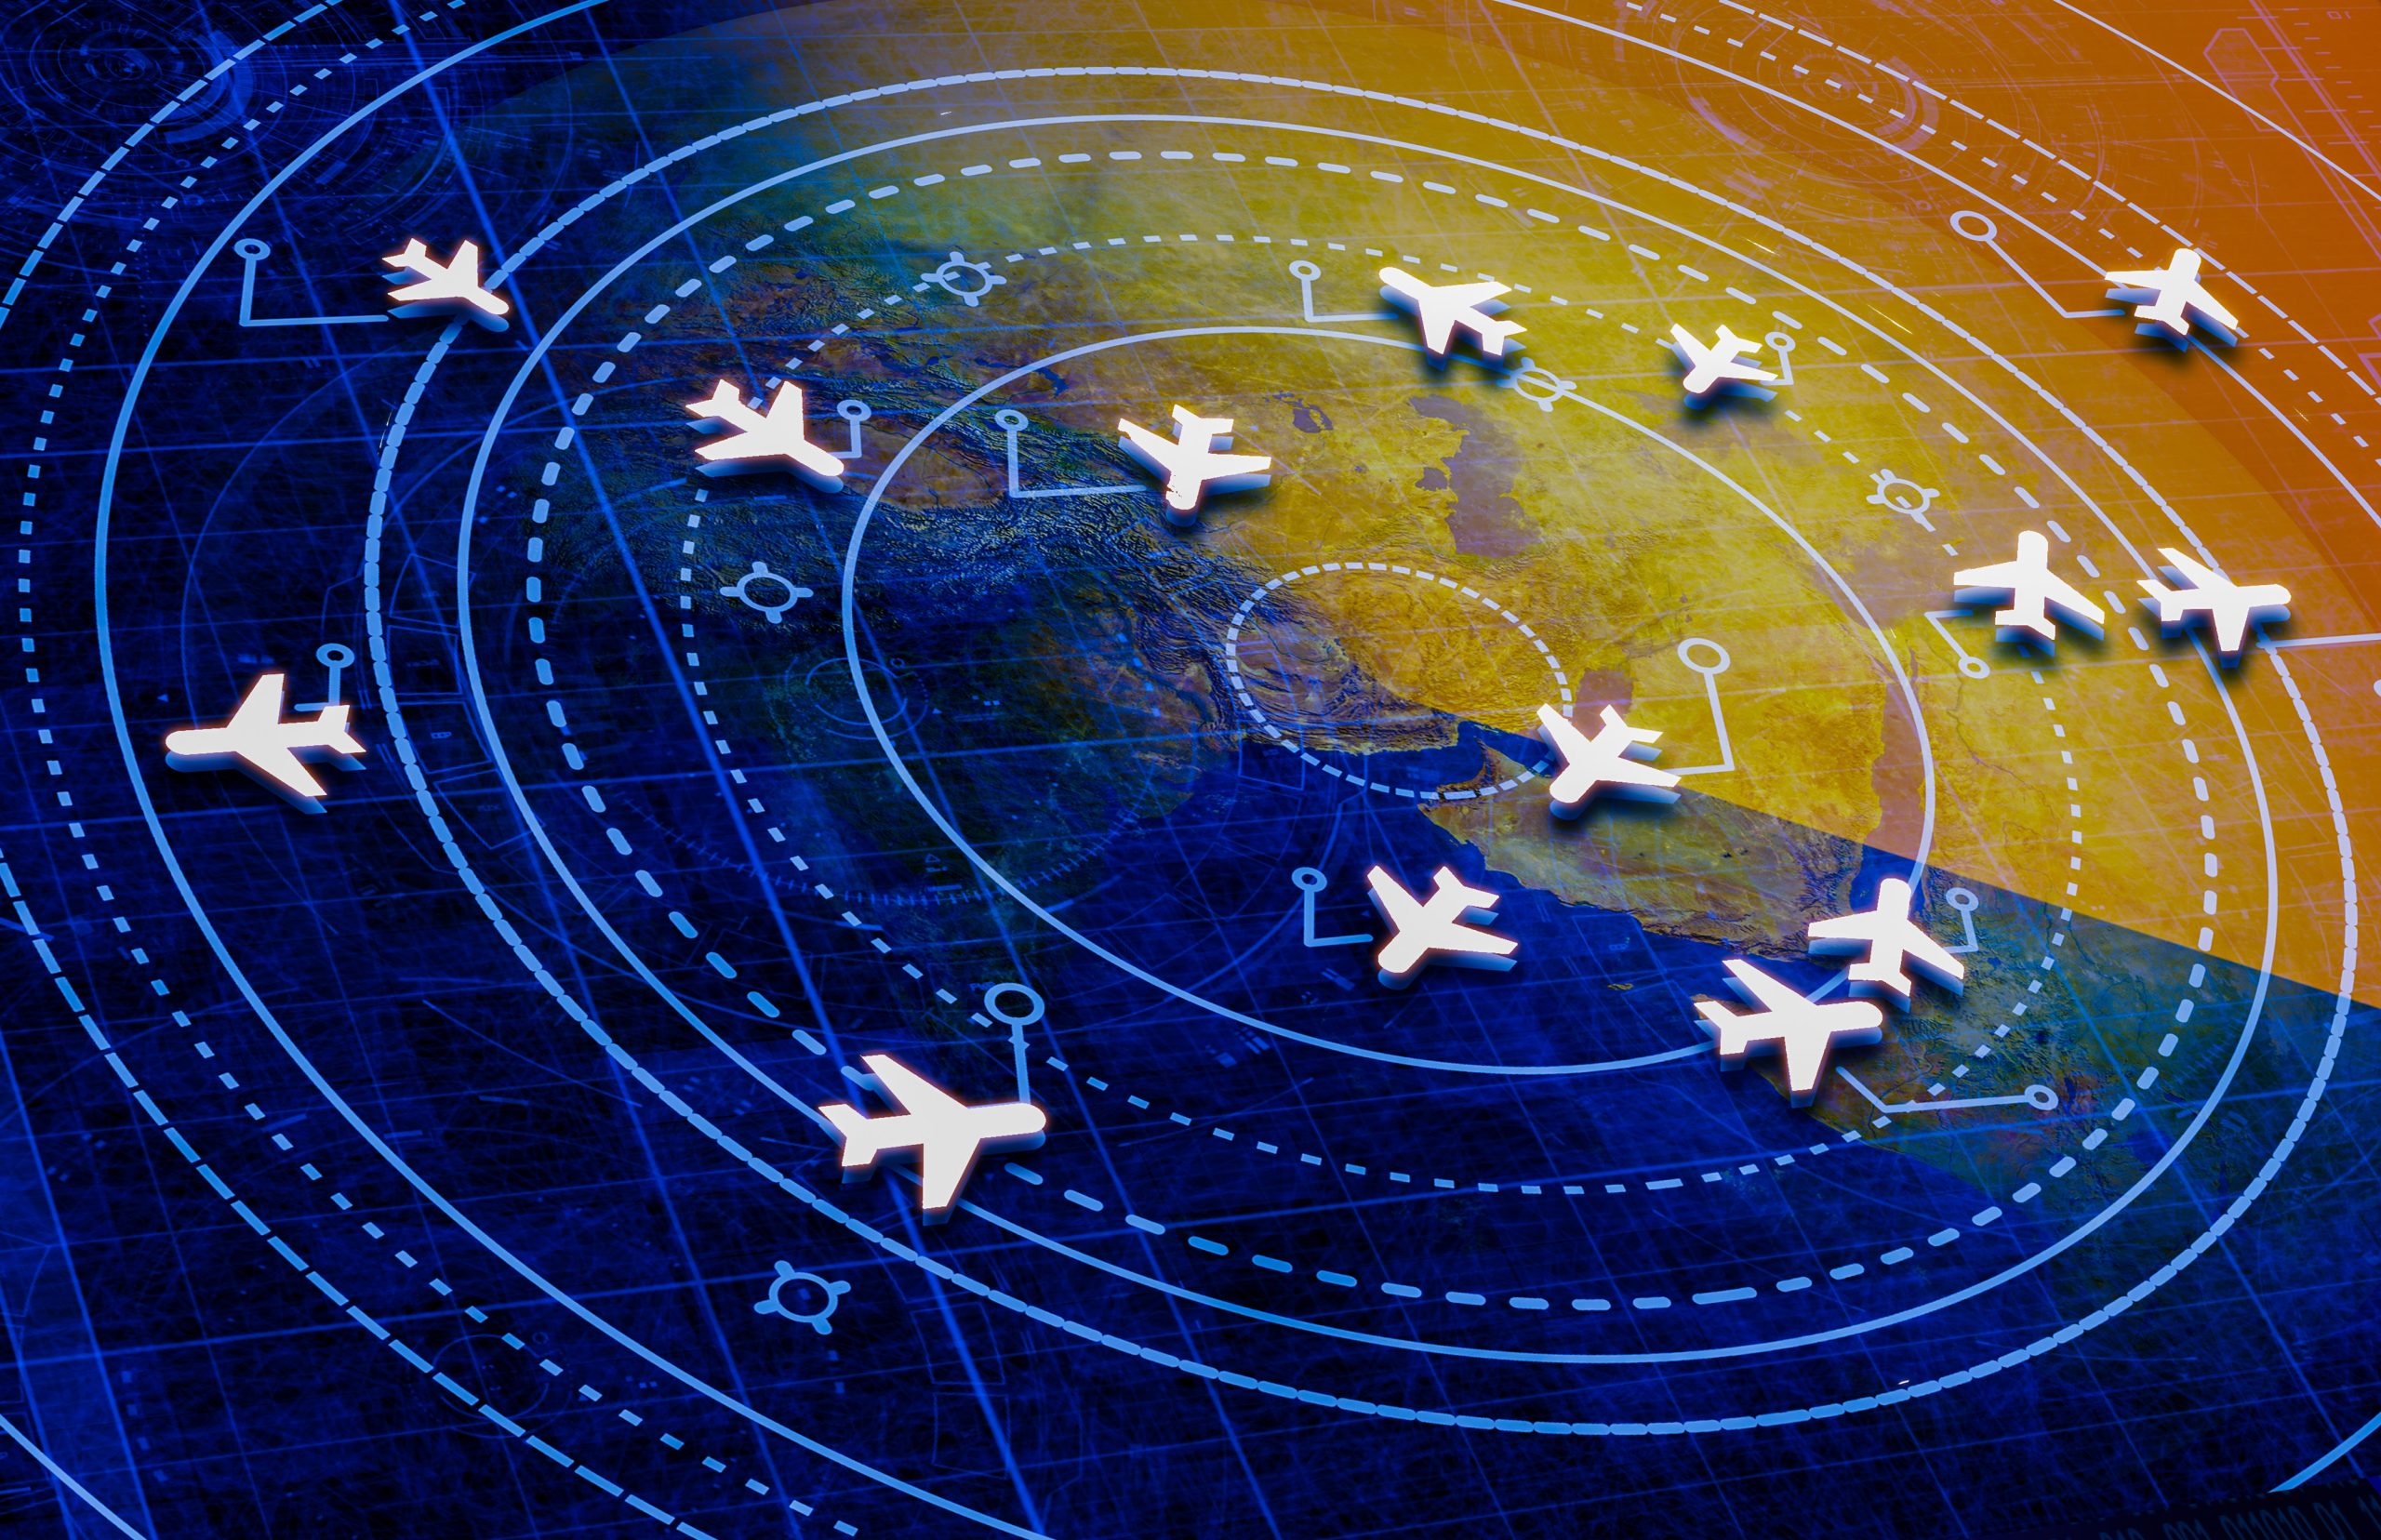 Ce qu'il faut savoir sur les systèmes de gestion de vol (FMS) expliqués